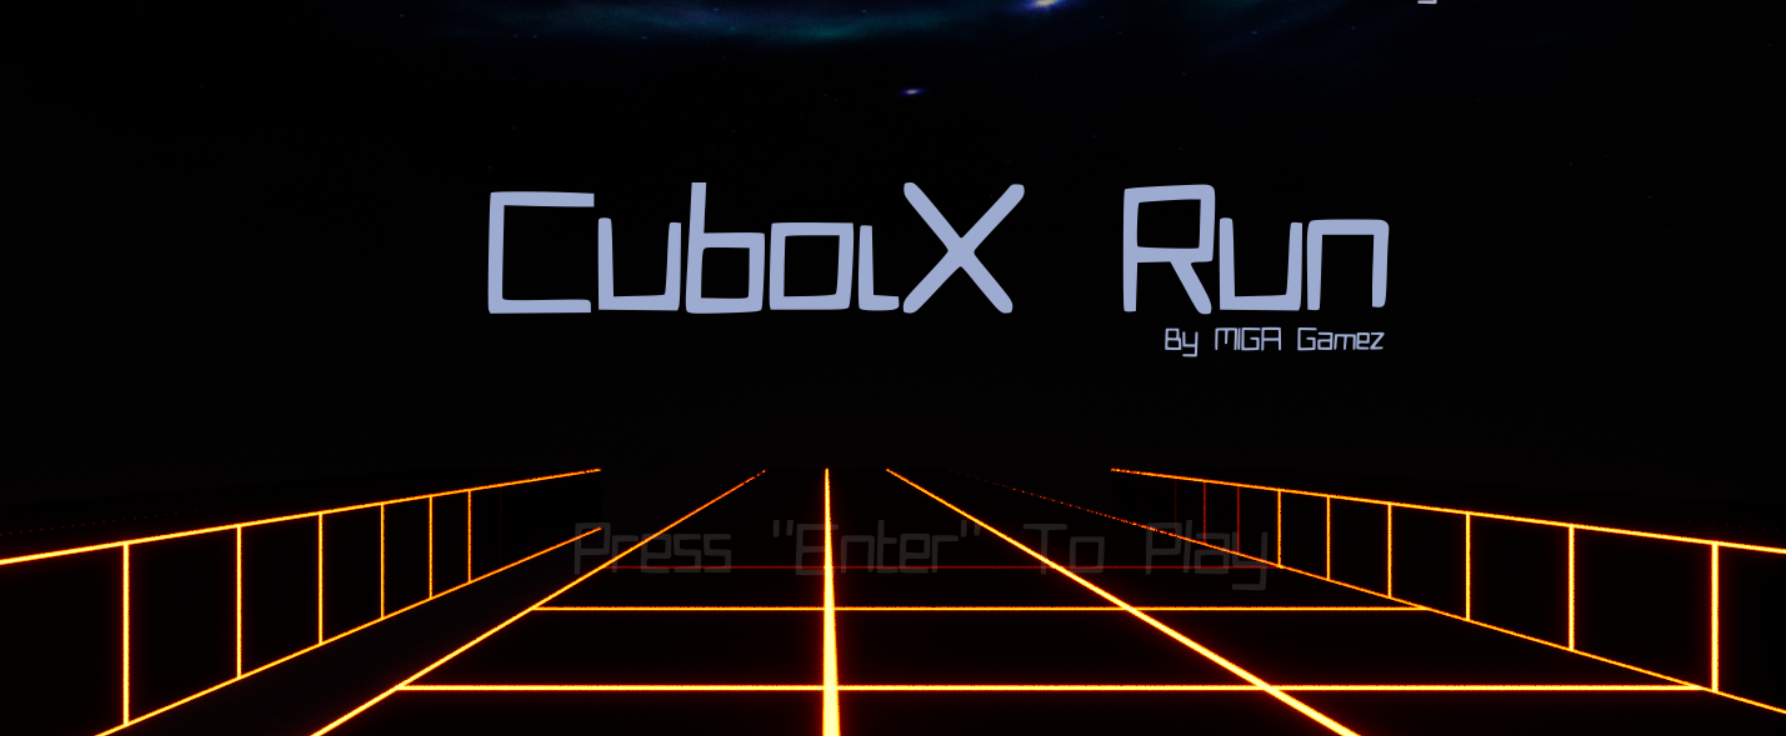 Cuboix Run